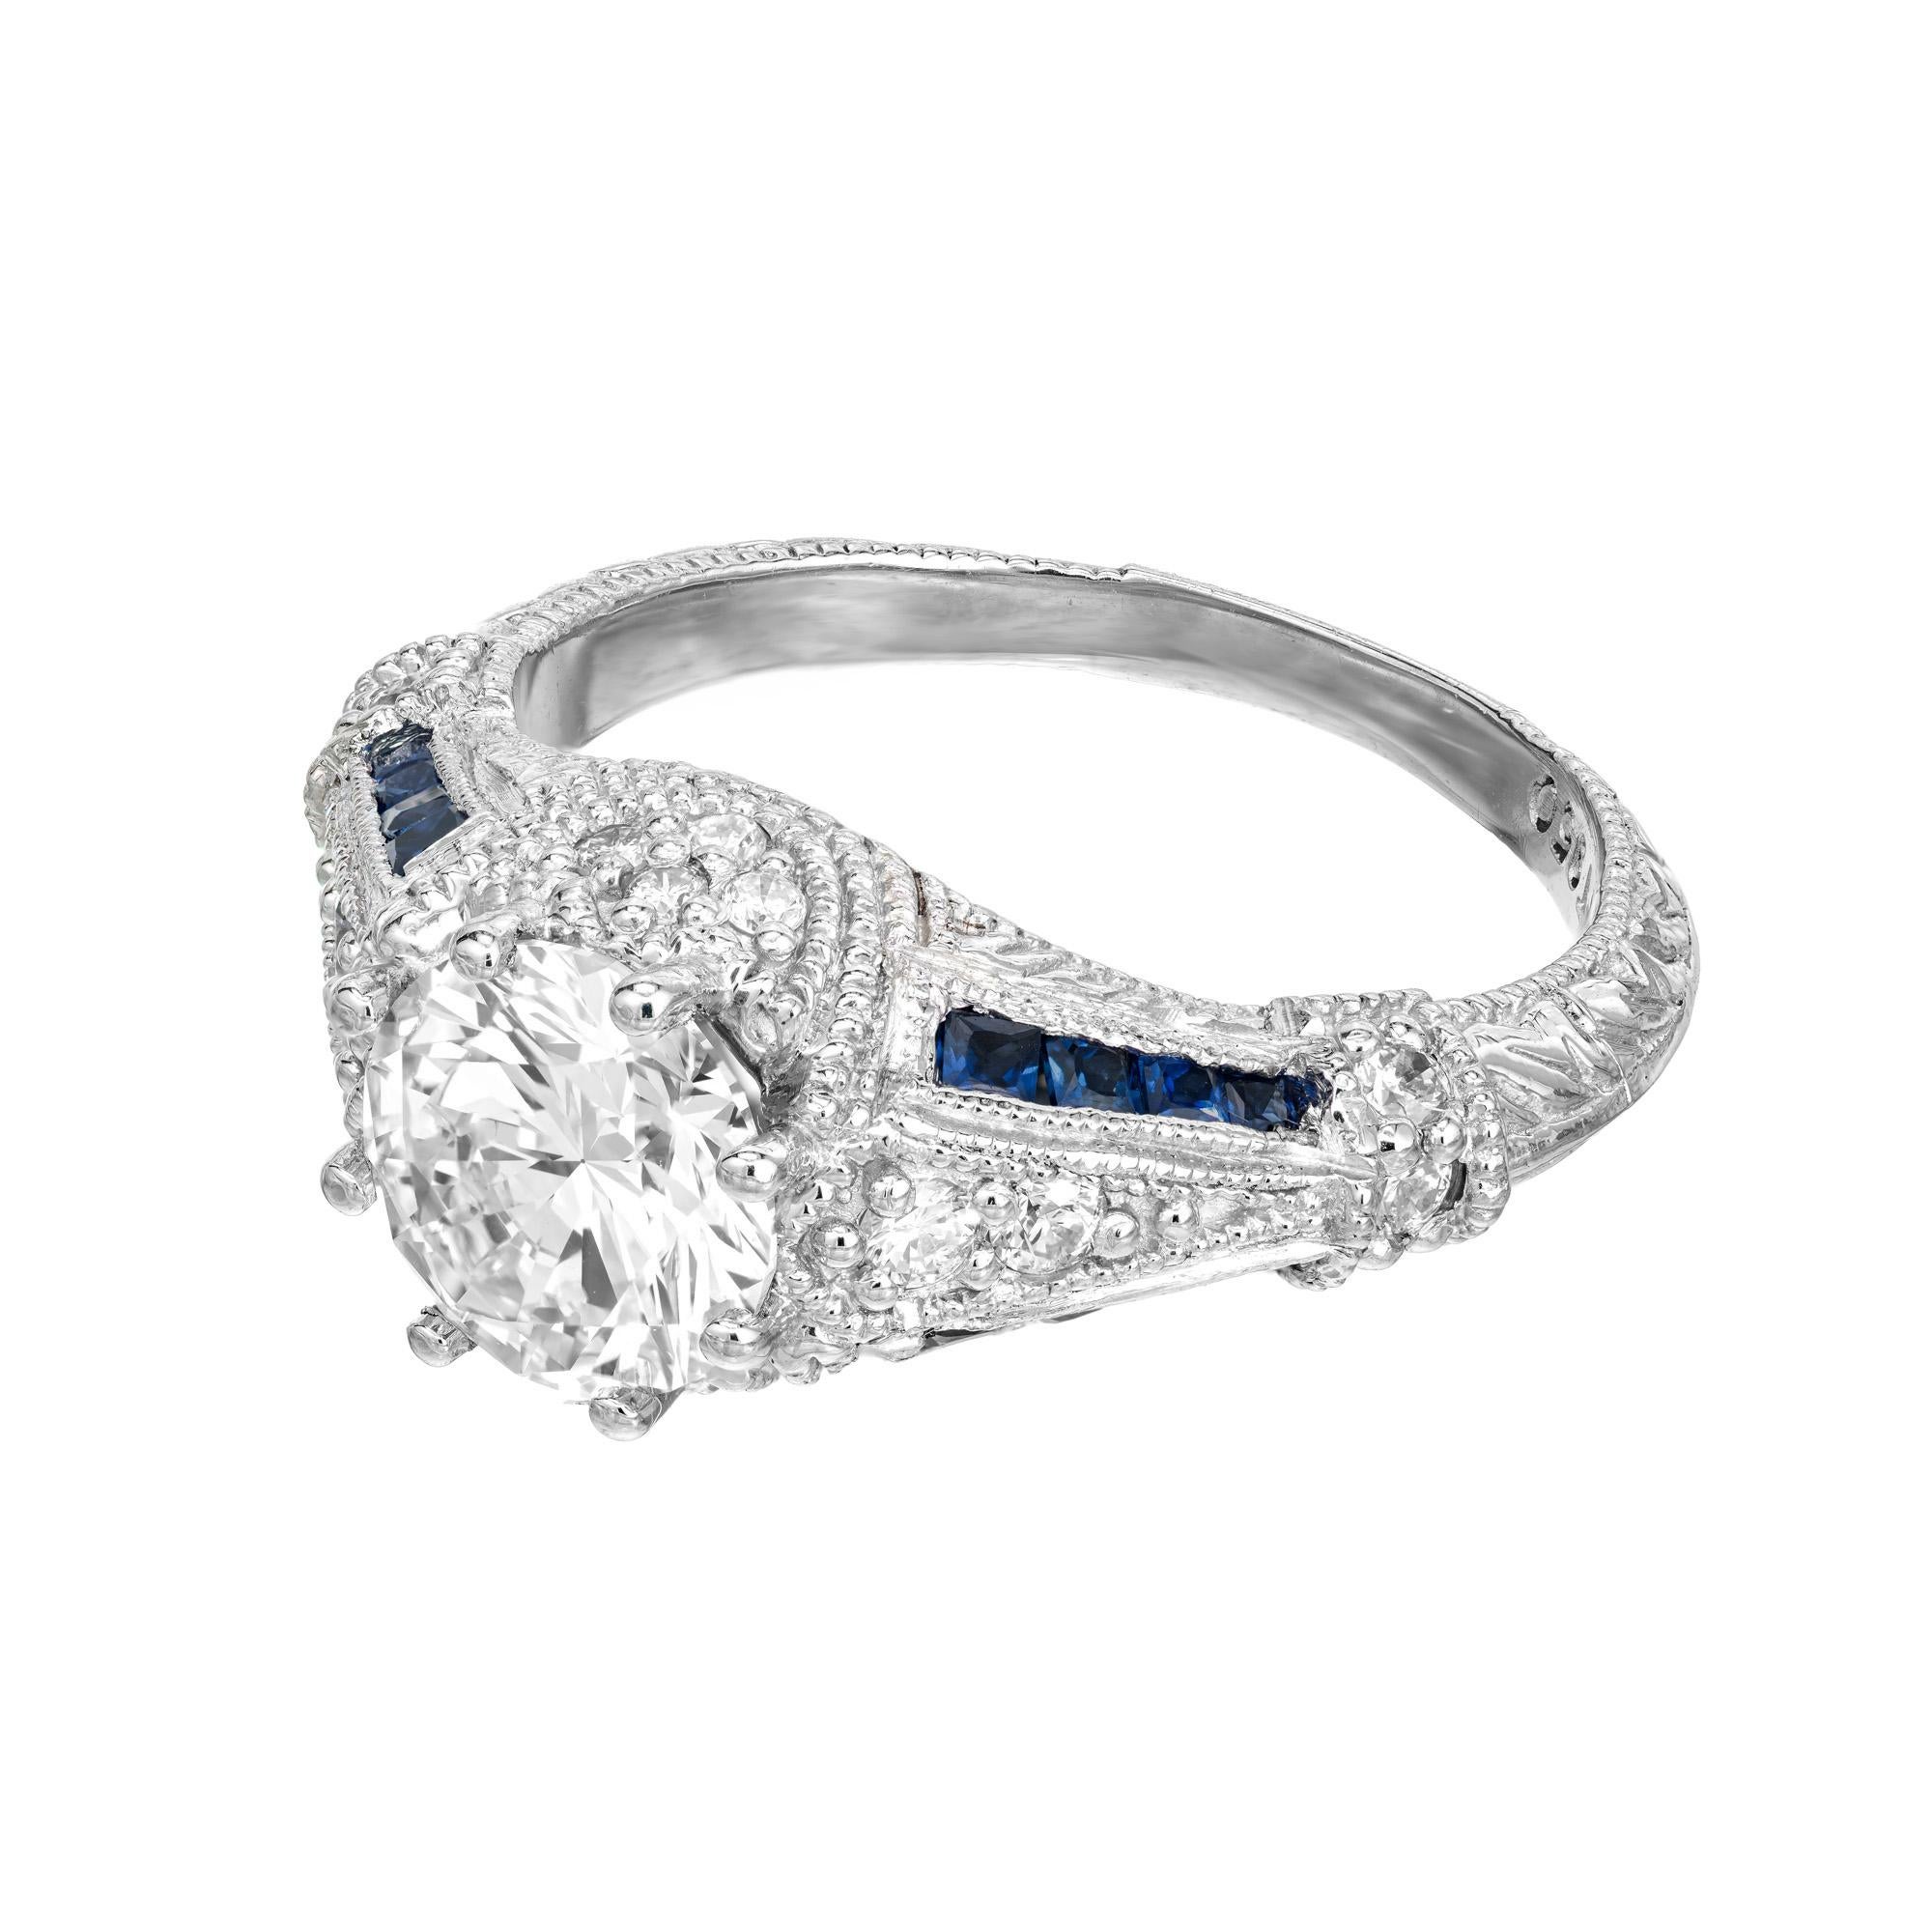 Verlobungsring mit Diamanten und Saphiren. GIA-zertifizierter runder Diamant mit Brillantschliff von 1,51 Karat in einer 8-Zacken-Fassung aus Platin. Dieser Ring ist sehr detailliert und mit 18 runden Dimonds im Vollschliff und zwei Reihen